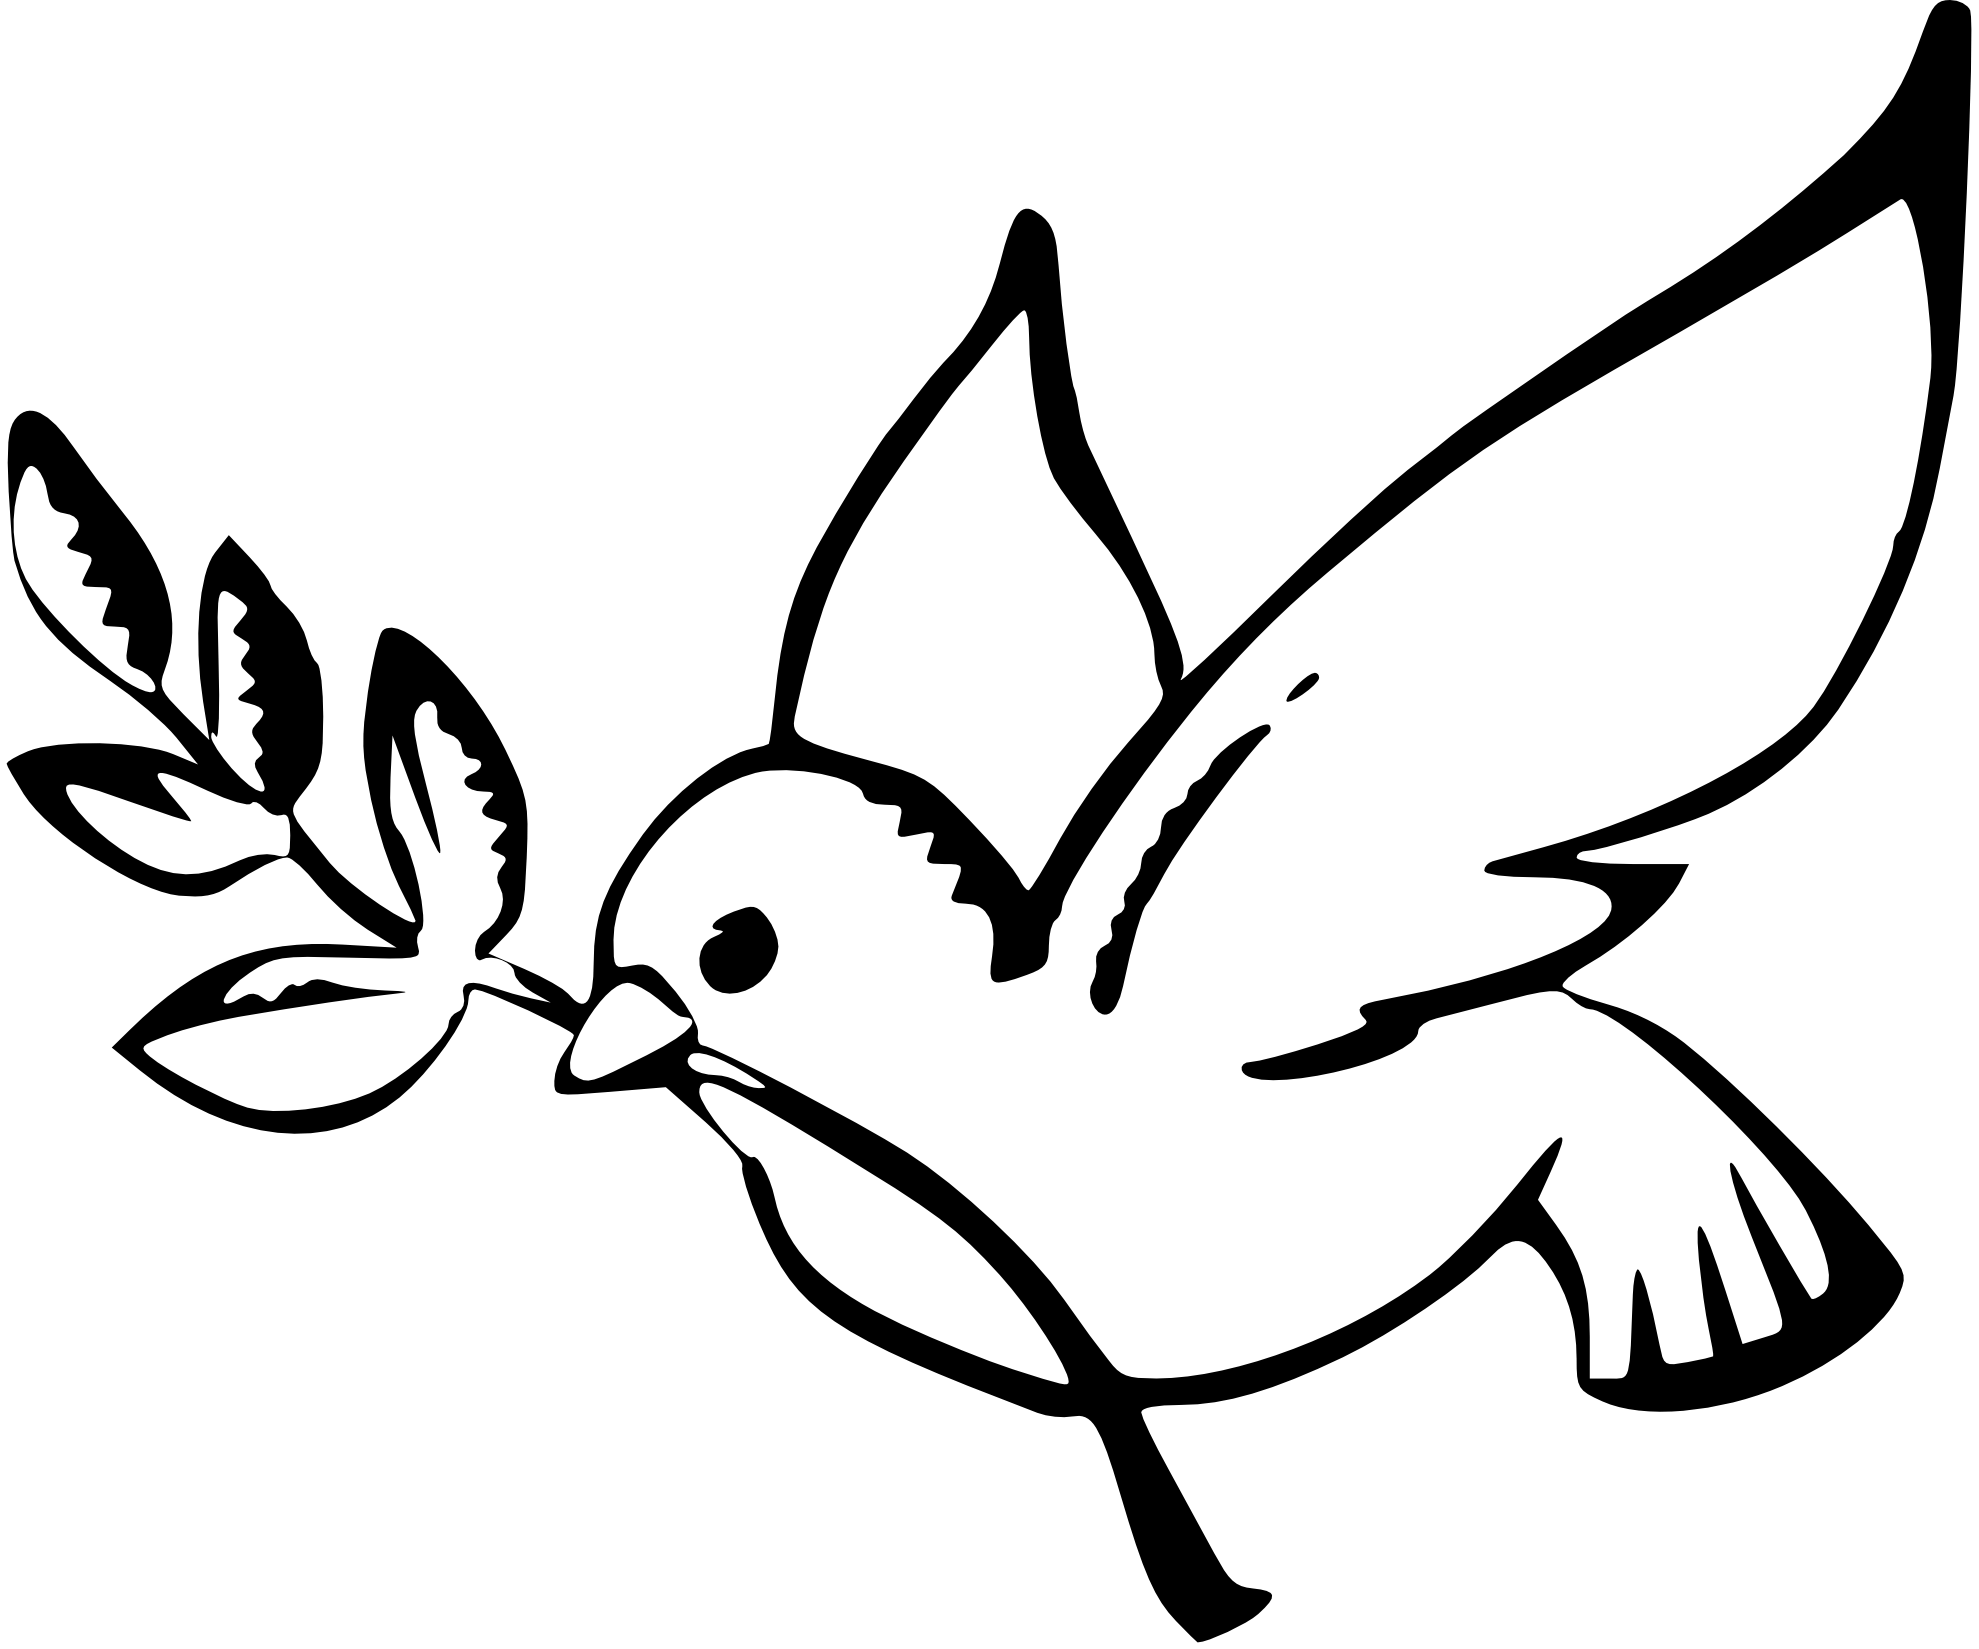 Peace Dove Black and White SVG file